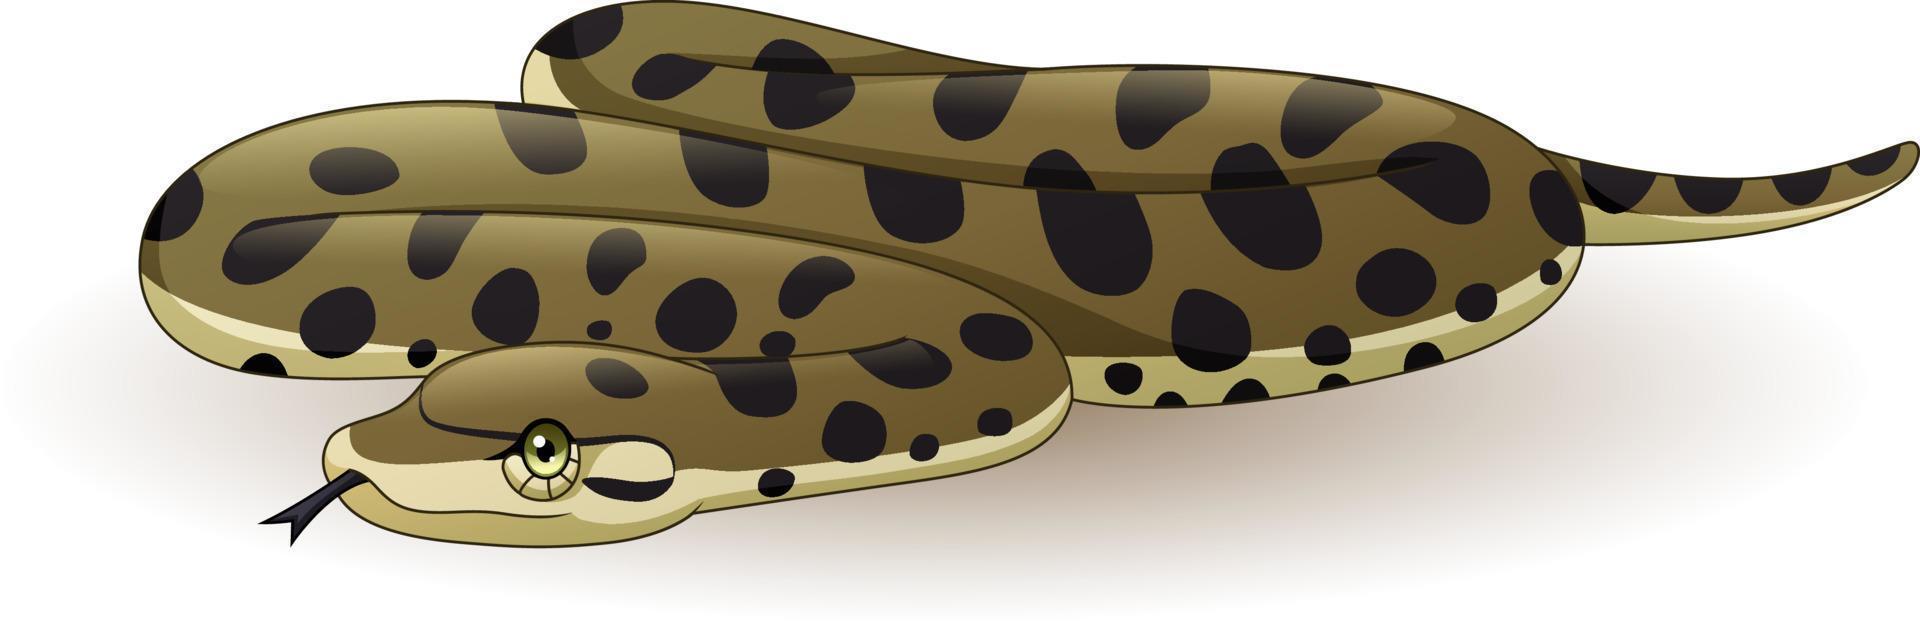 tecknad anaconda orm på vit bakgrund vektor